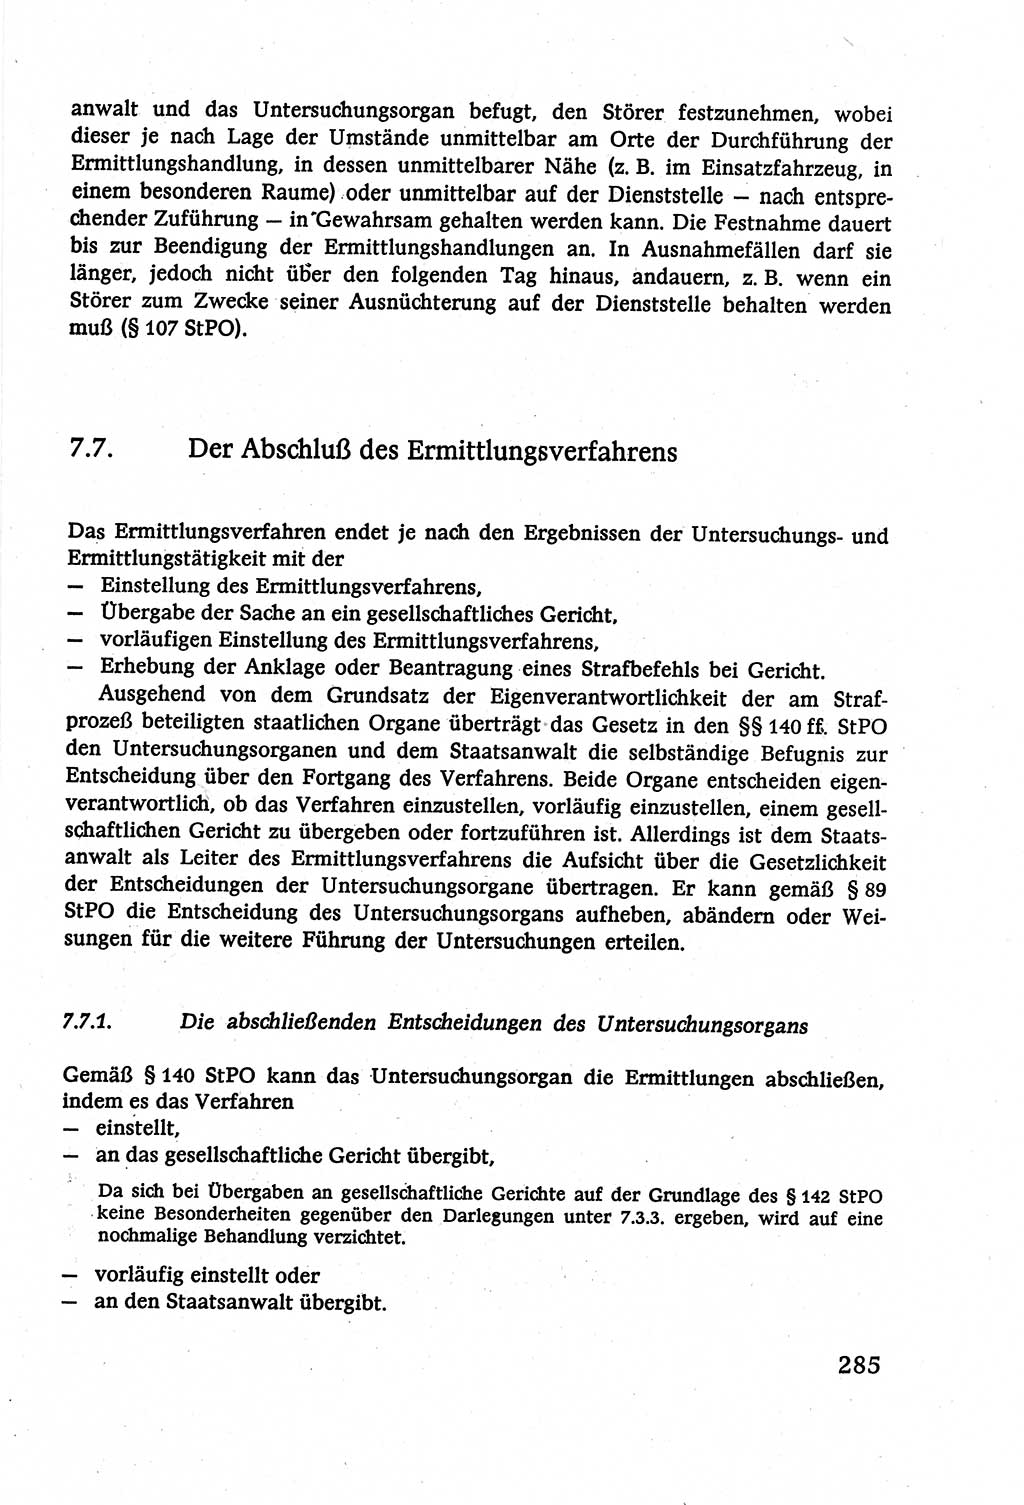 Strafverfahrensrecht [Deutsche Demokratische Republik (DDR)], Lehrbuch 1977, Seite 285 (Strafverf.-R. DDR Lb. 1977, S. 285)